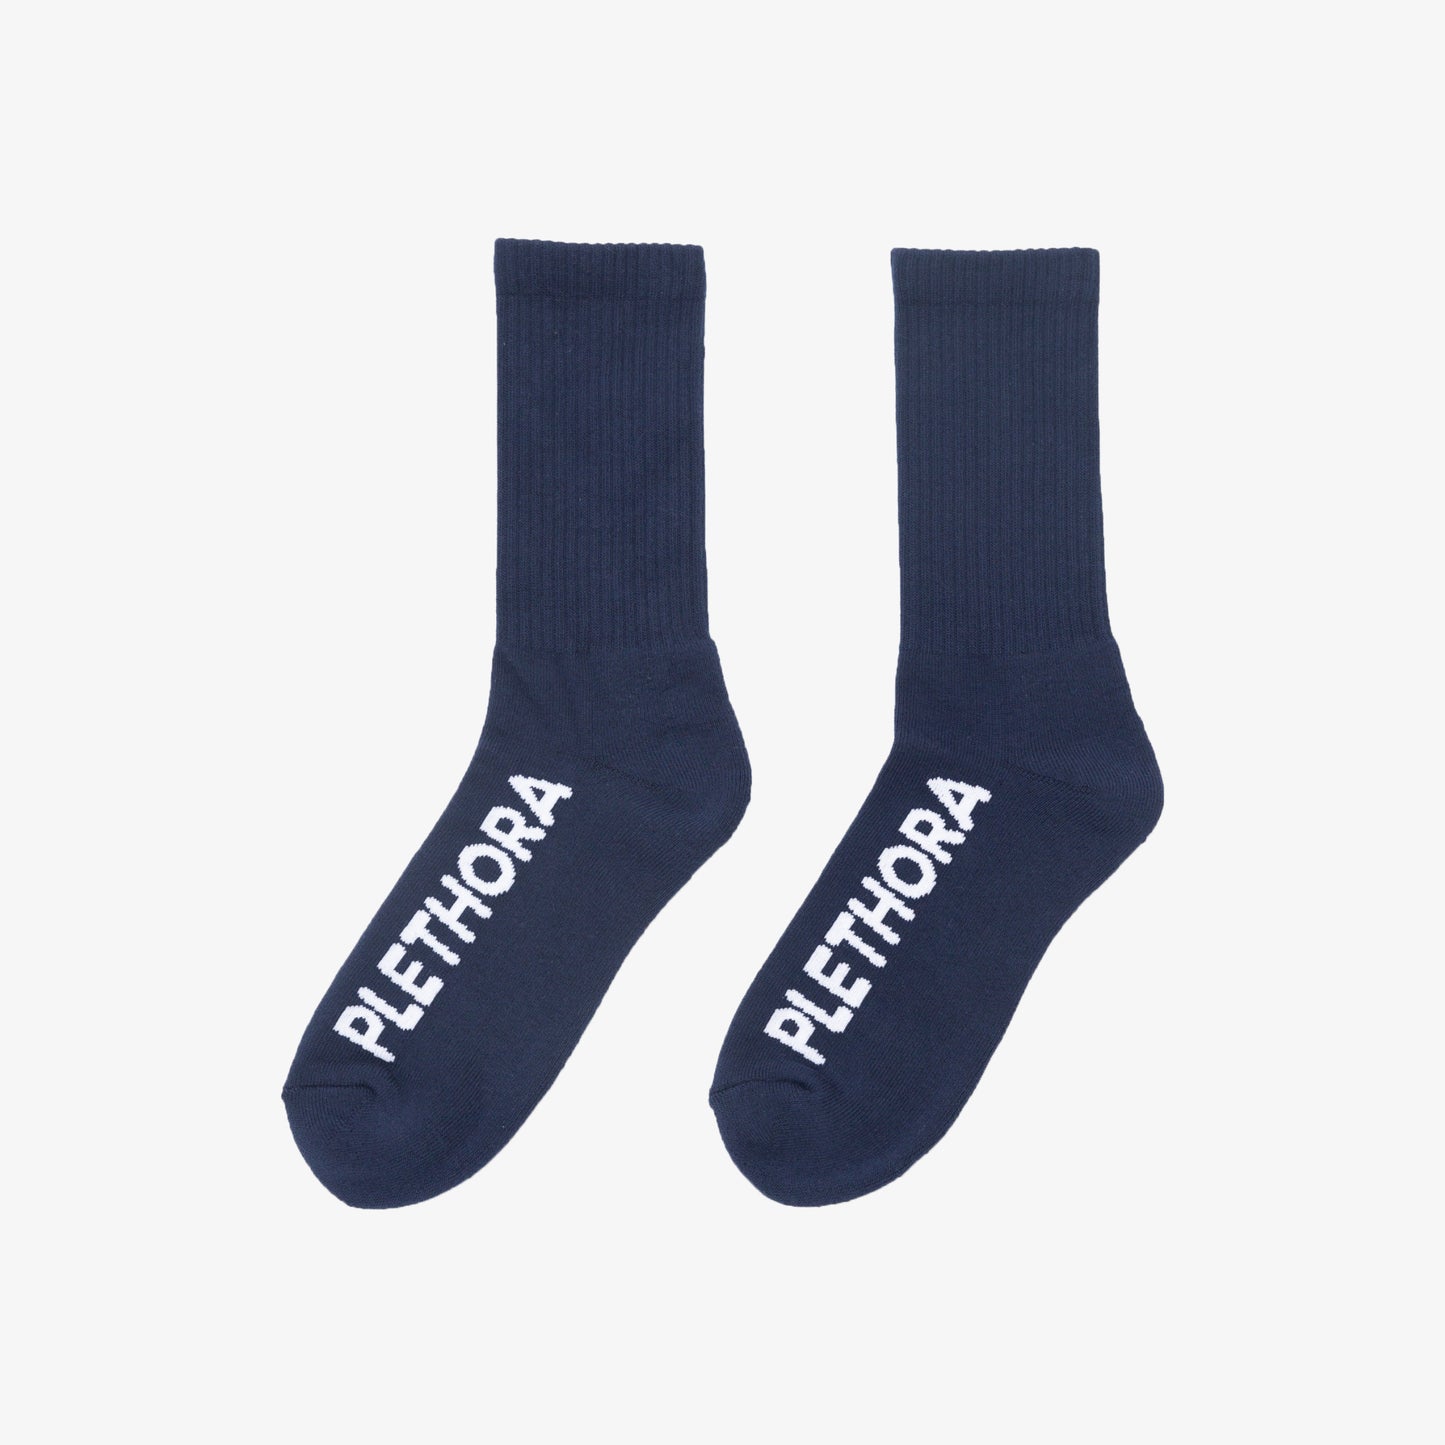 PLETHORA "Italic" Socks - Navy / White